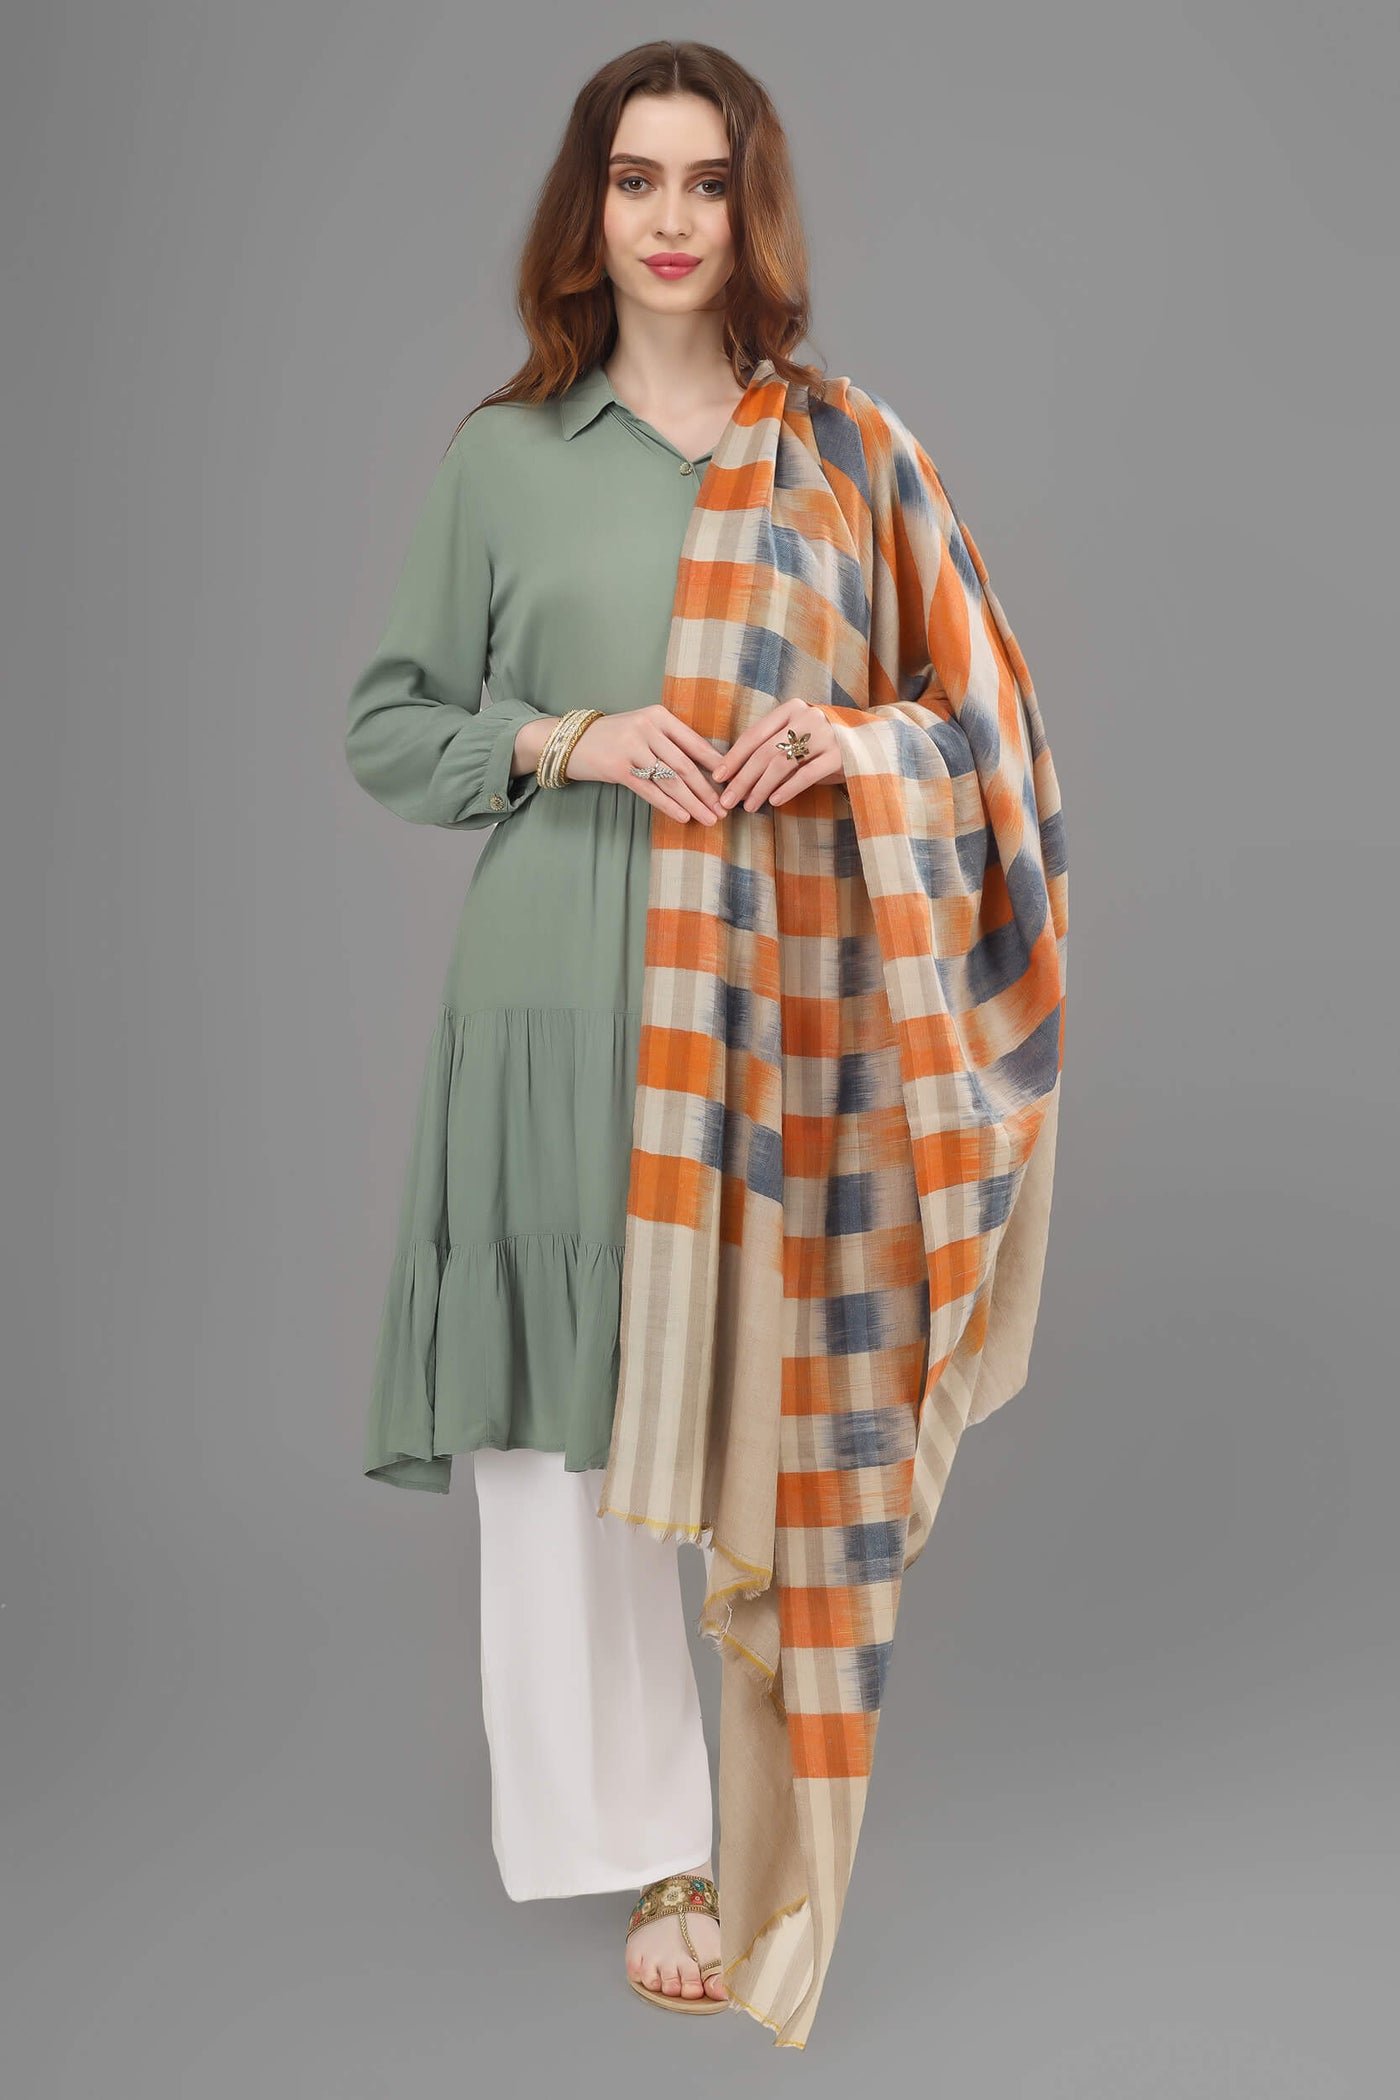 ONLINE PASHMINA - Blue orange Ikkat  design pashmina shawl